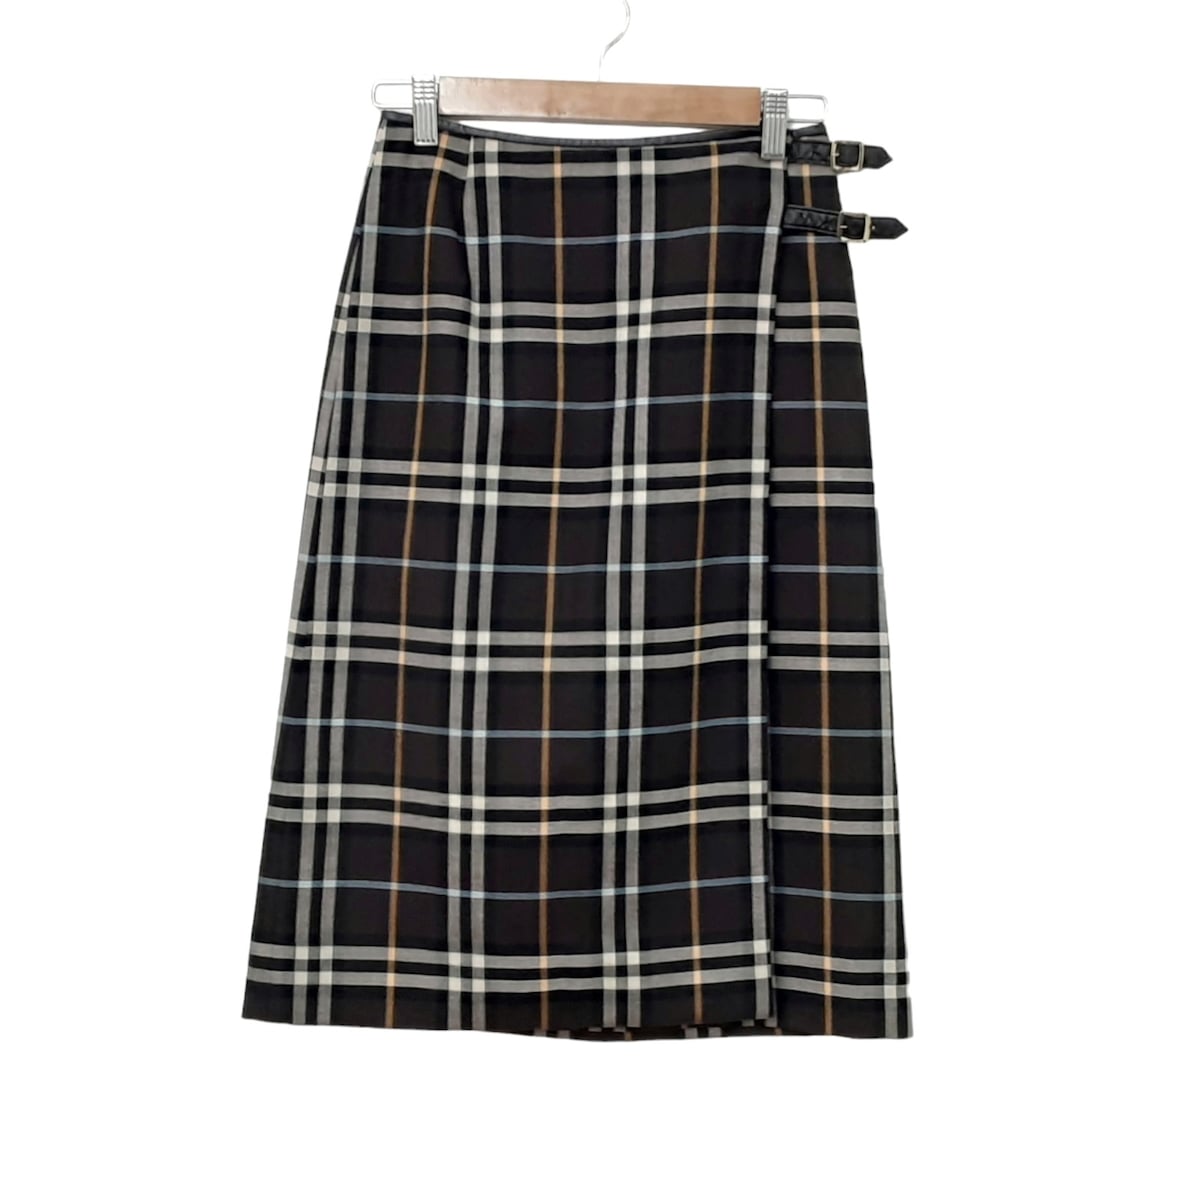 【中古】Burberry LONDON(バーバリーロンドン) 巻きスカート ひざ丈/チェック柄 ダークブラウン×黒×マルチ